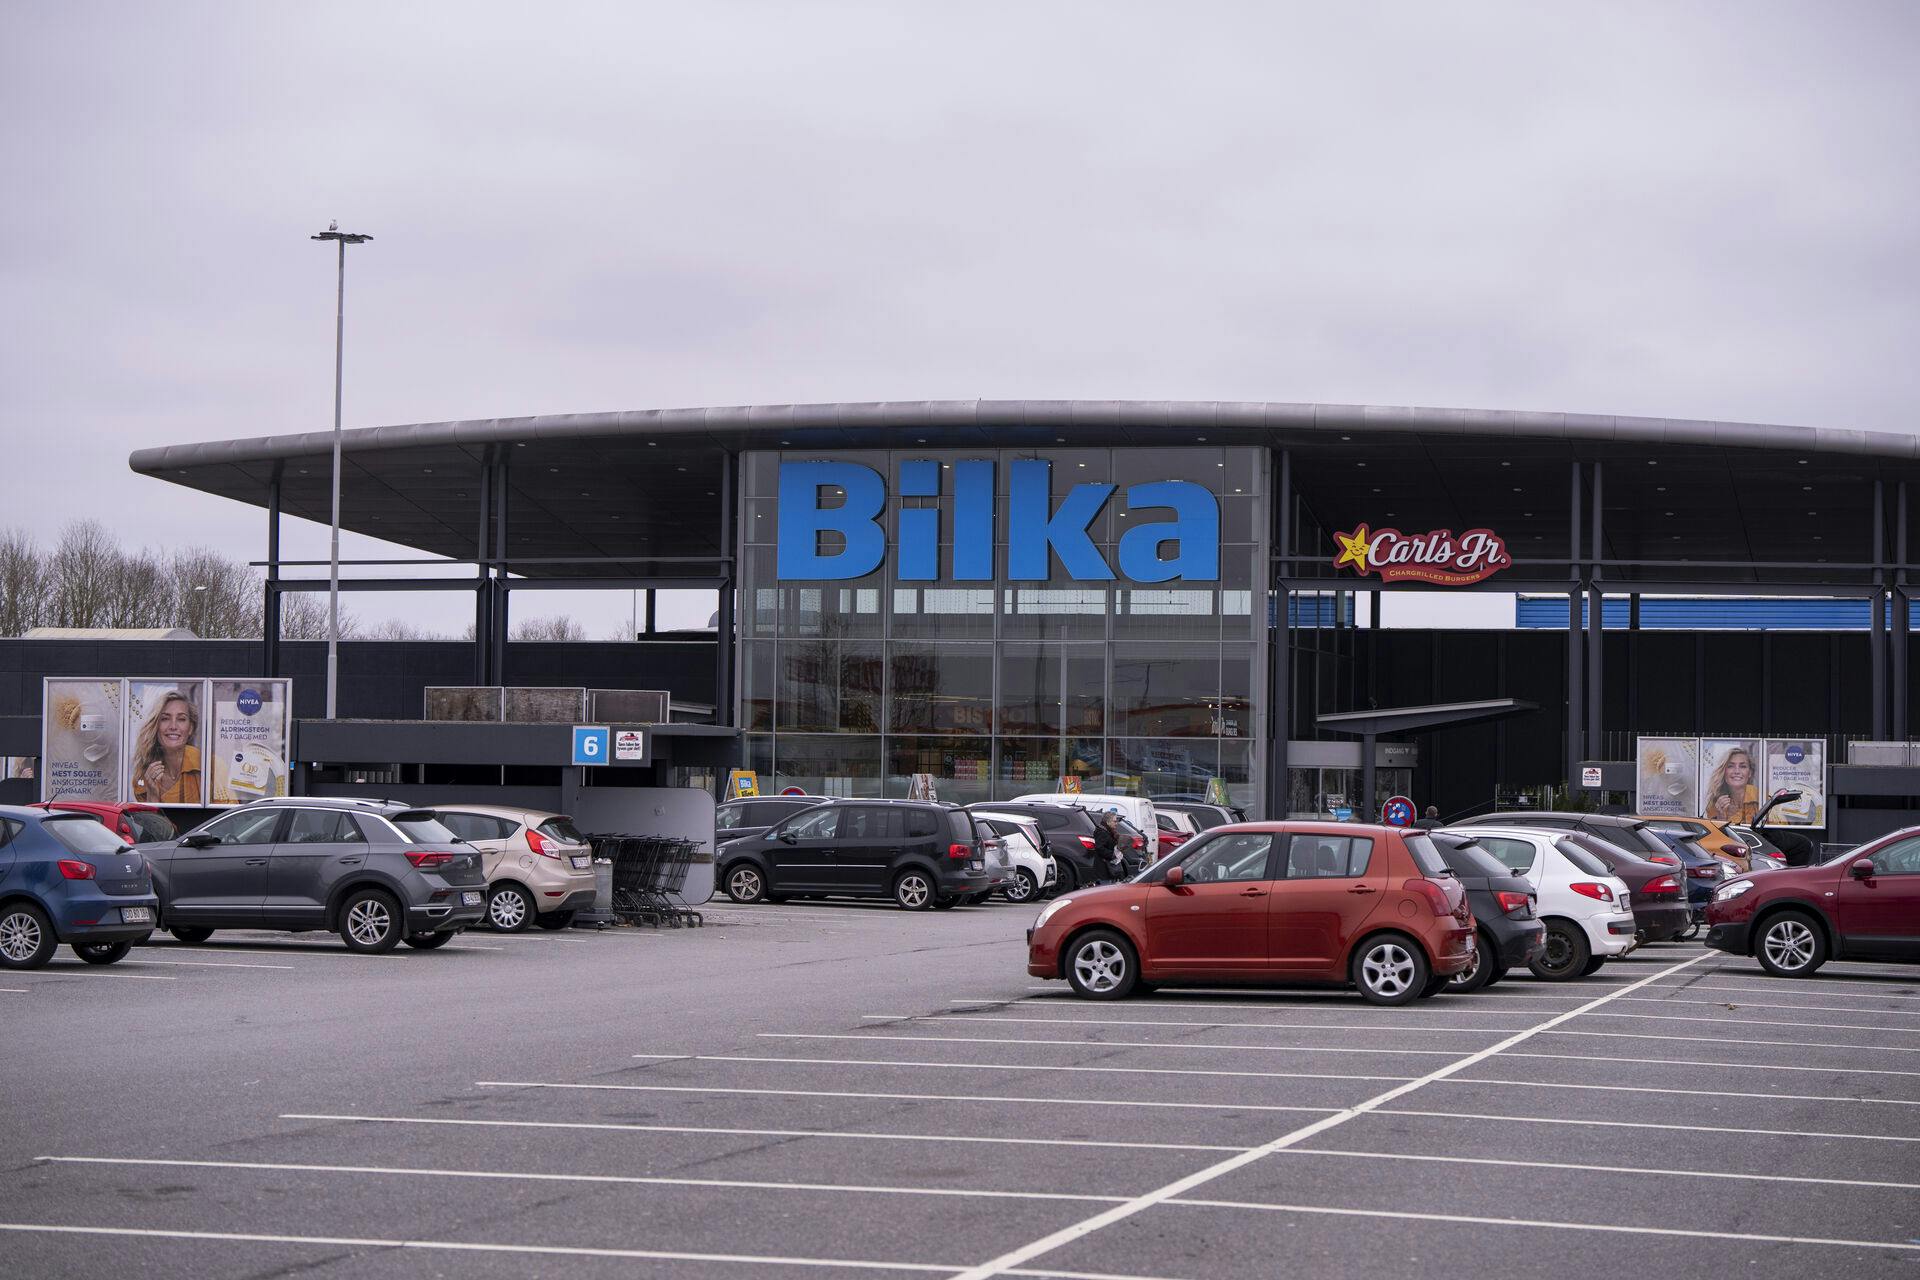 Bilka er ejet af Salling Group, der også driver blandt andet Føtex, Netto, Salling og BR.